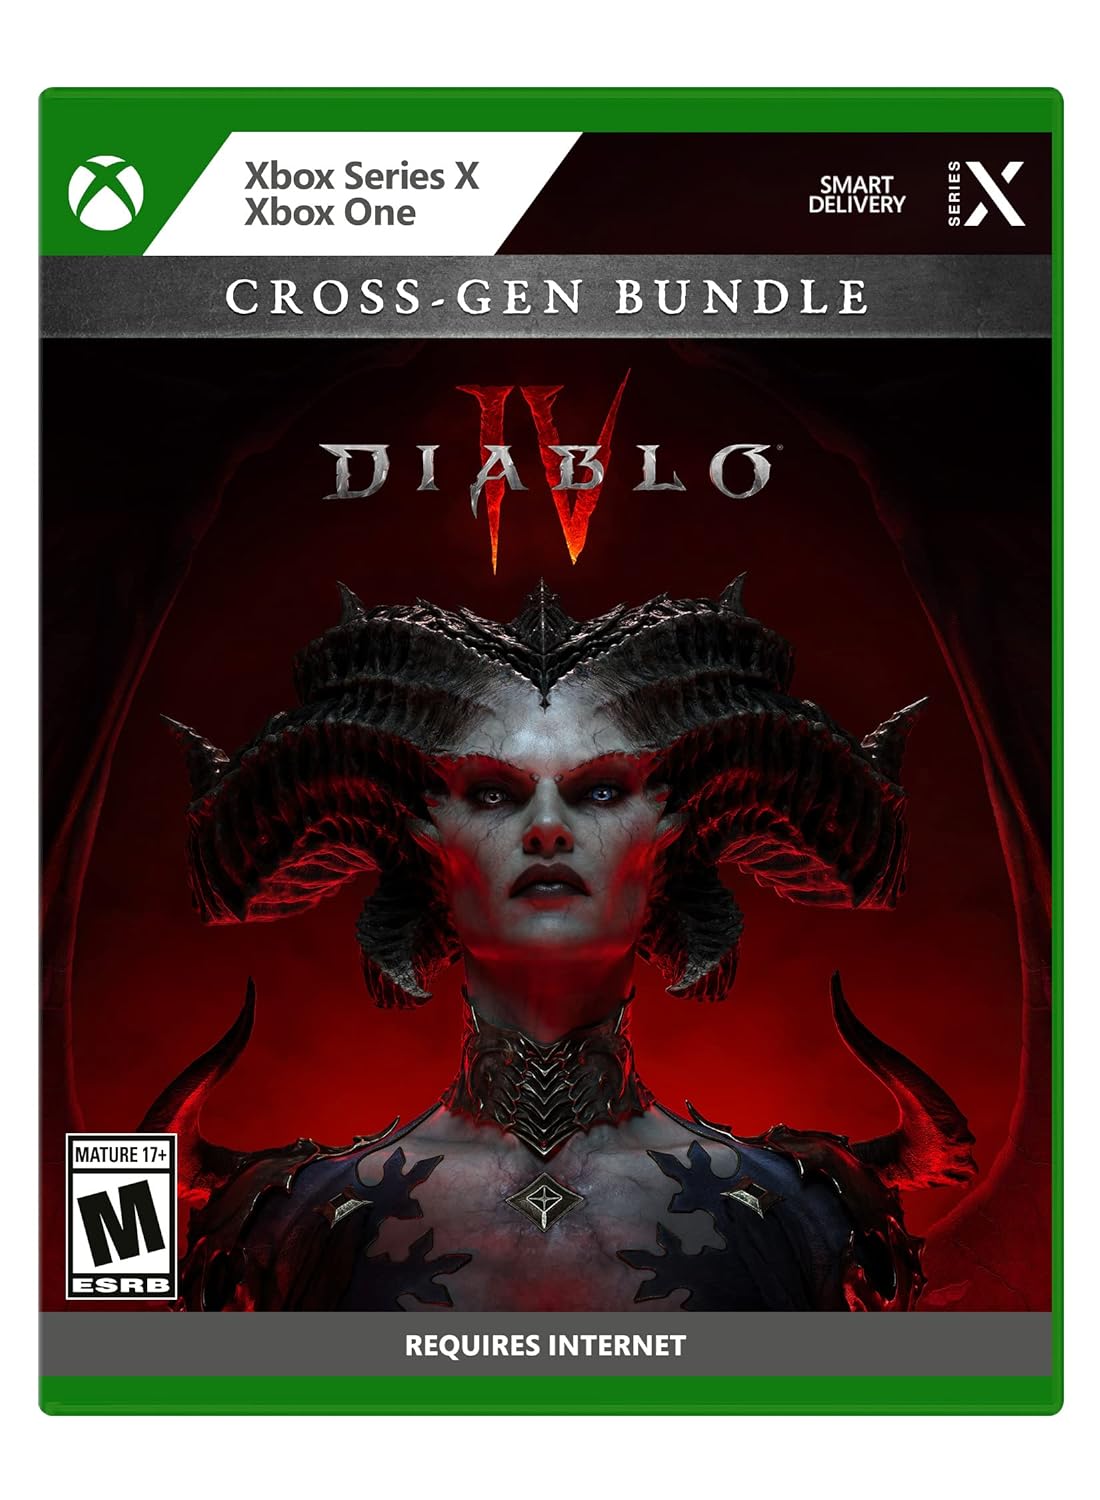 $44.99: Diablo IV - Xbox Series X at Amazon